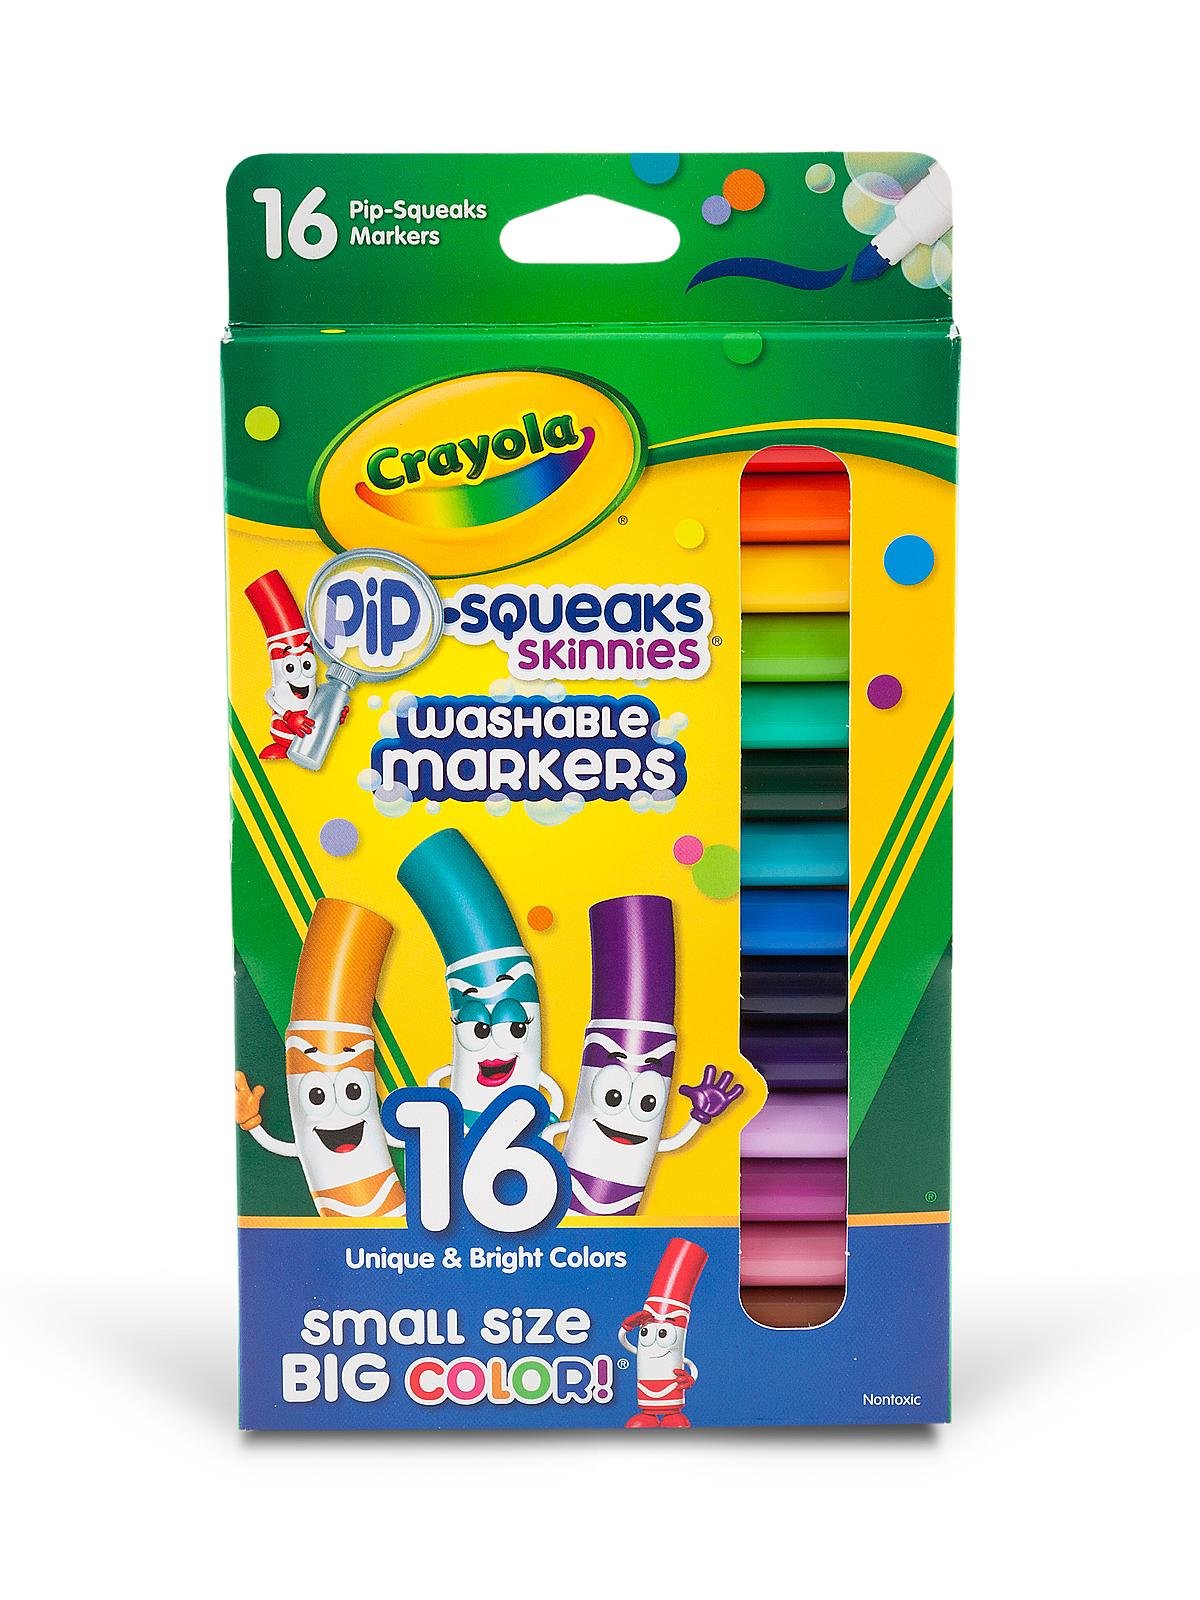 Crayola - Pip-Squeaks Skinnies